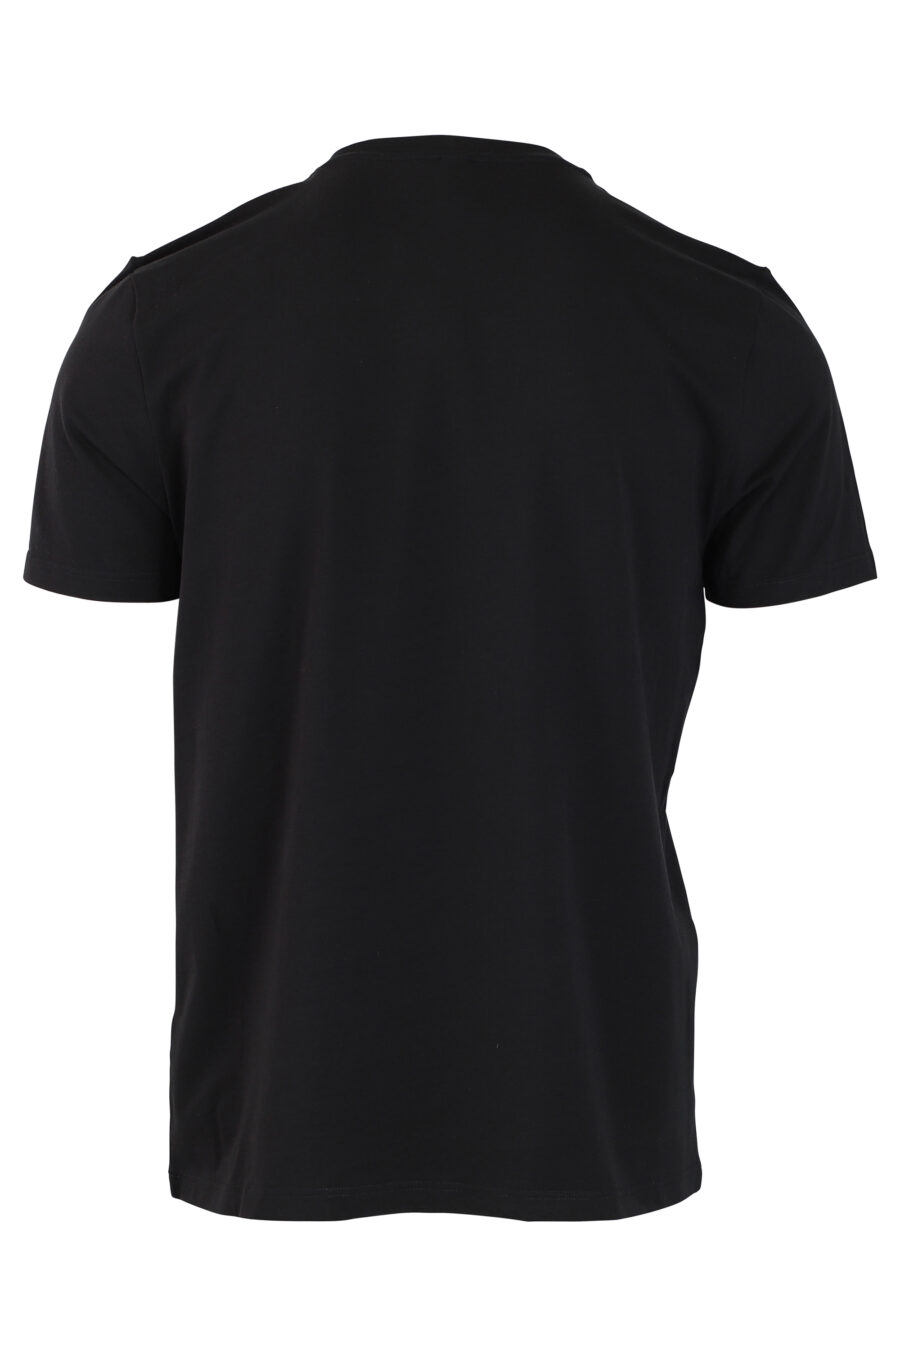 Pack de dos camisetas negras con logo en banda en hombros - IMG 0341